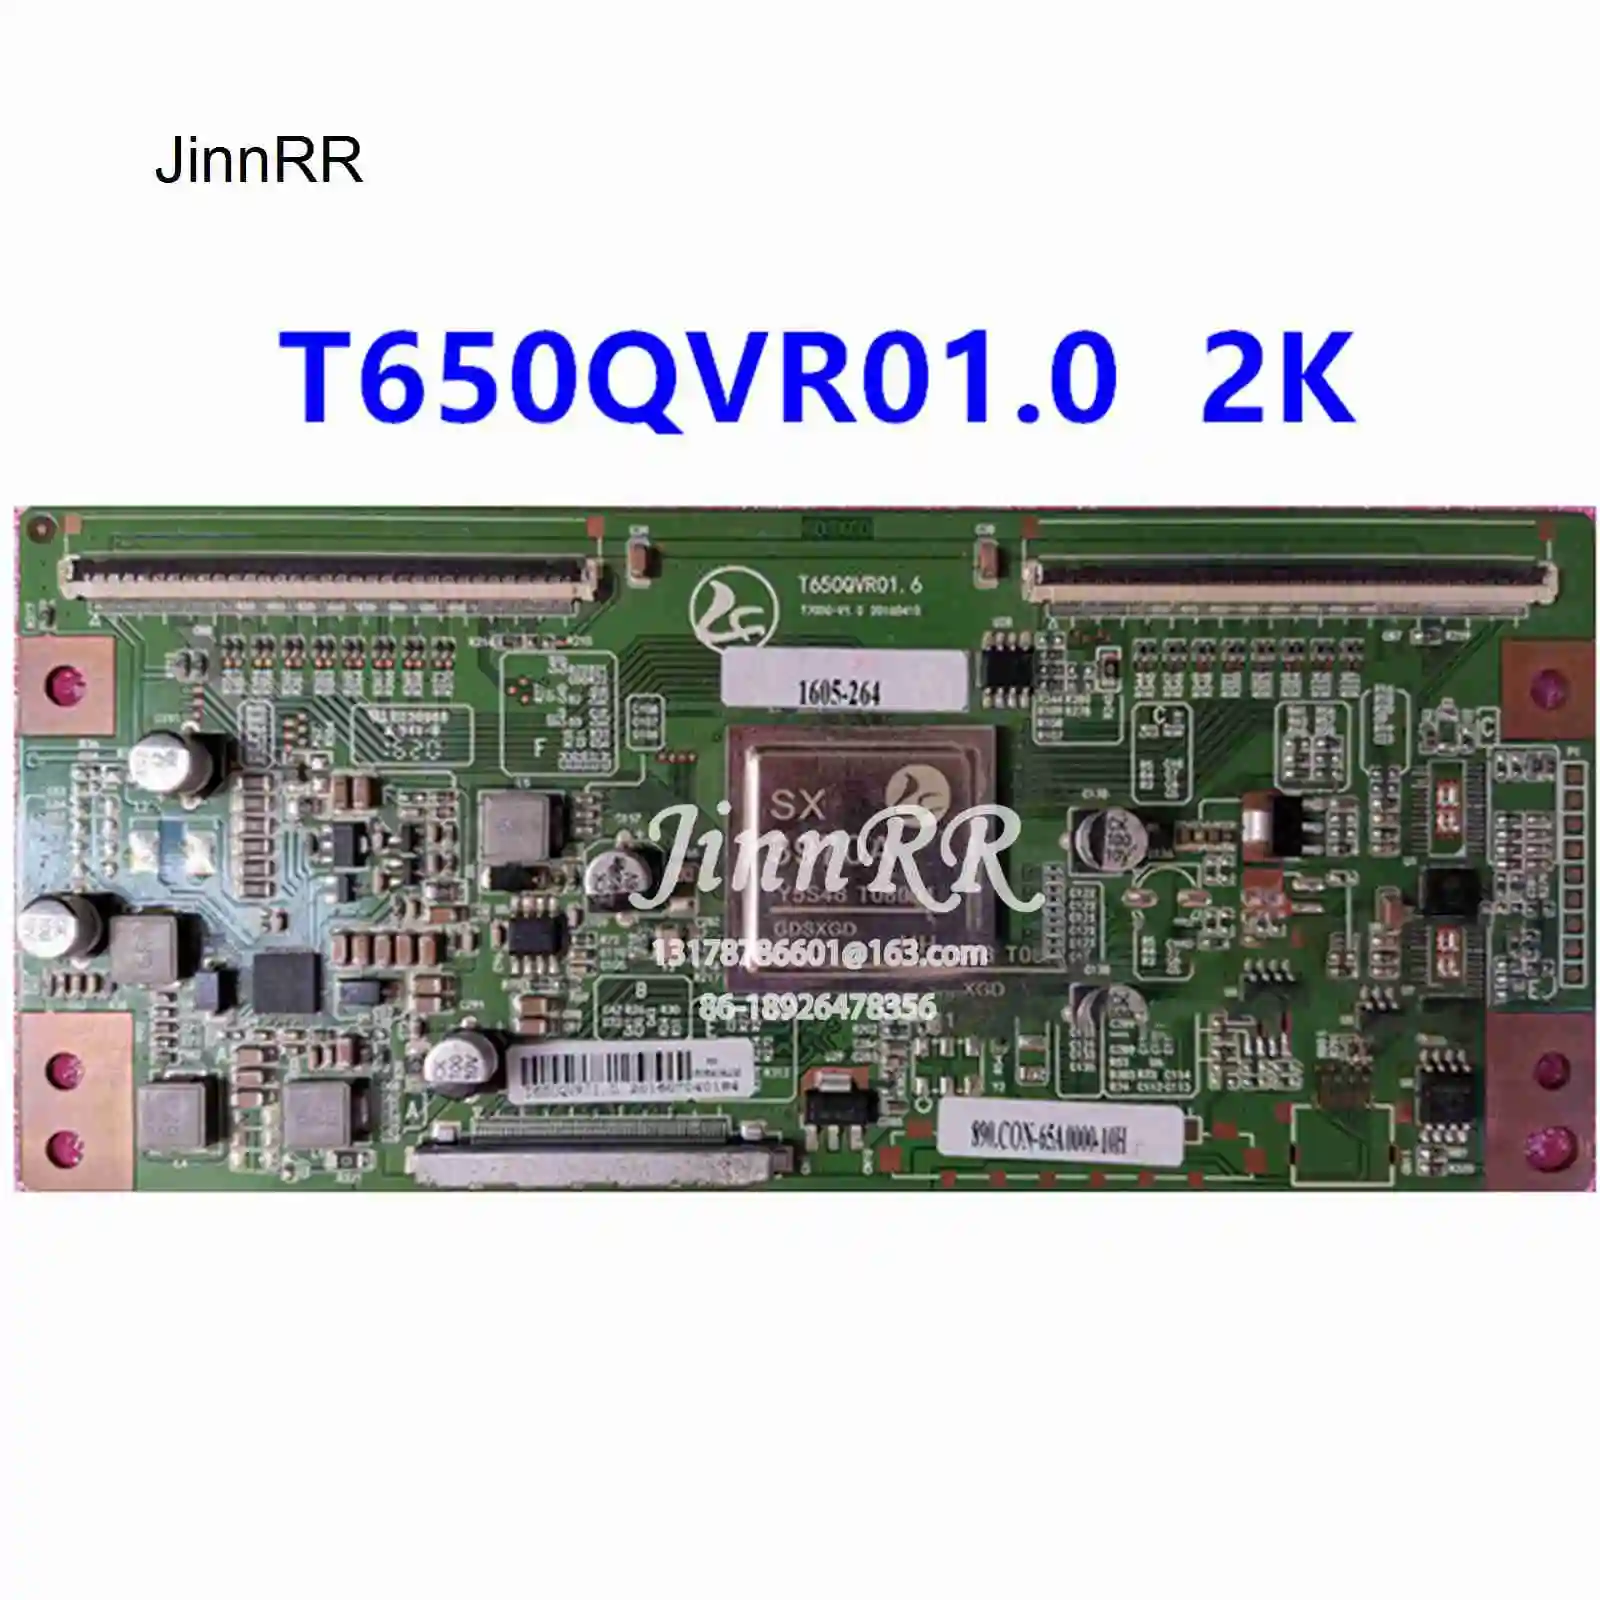 

T650QVR01.0 2K New upgrade For T650QVR01.6 Logic board Strict test quality assurance T650QVR01.0 2K